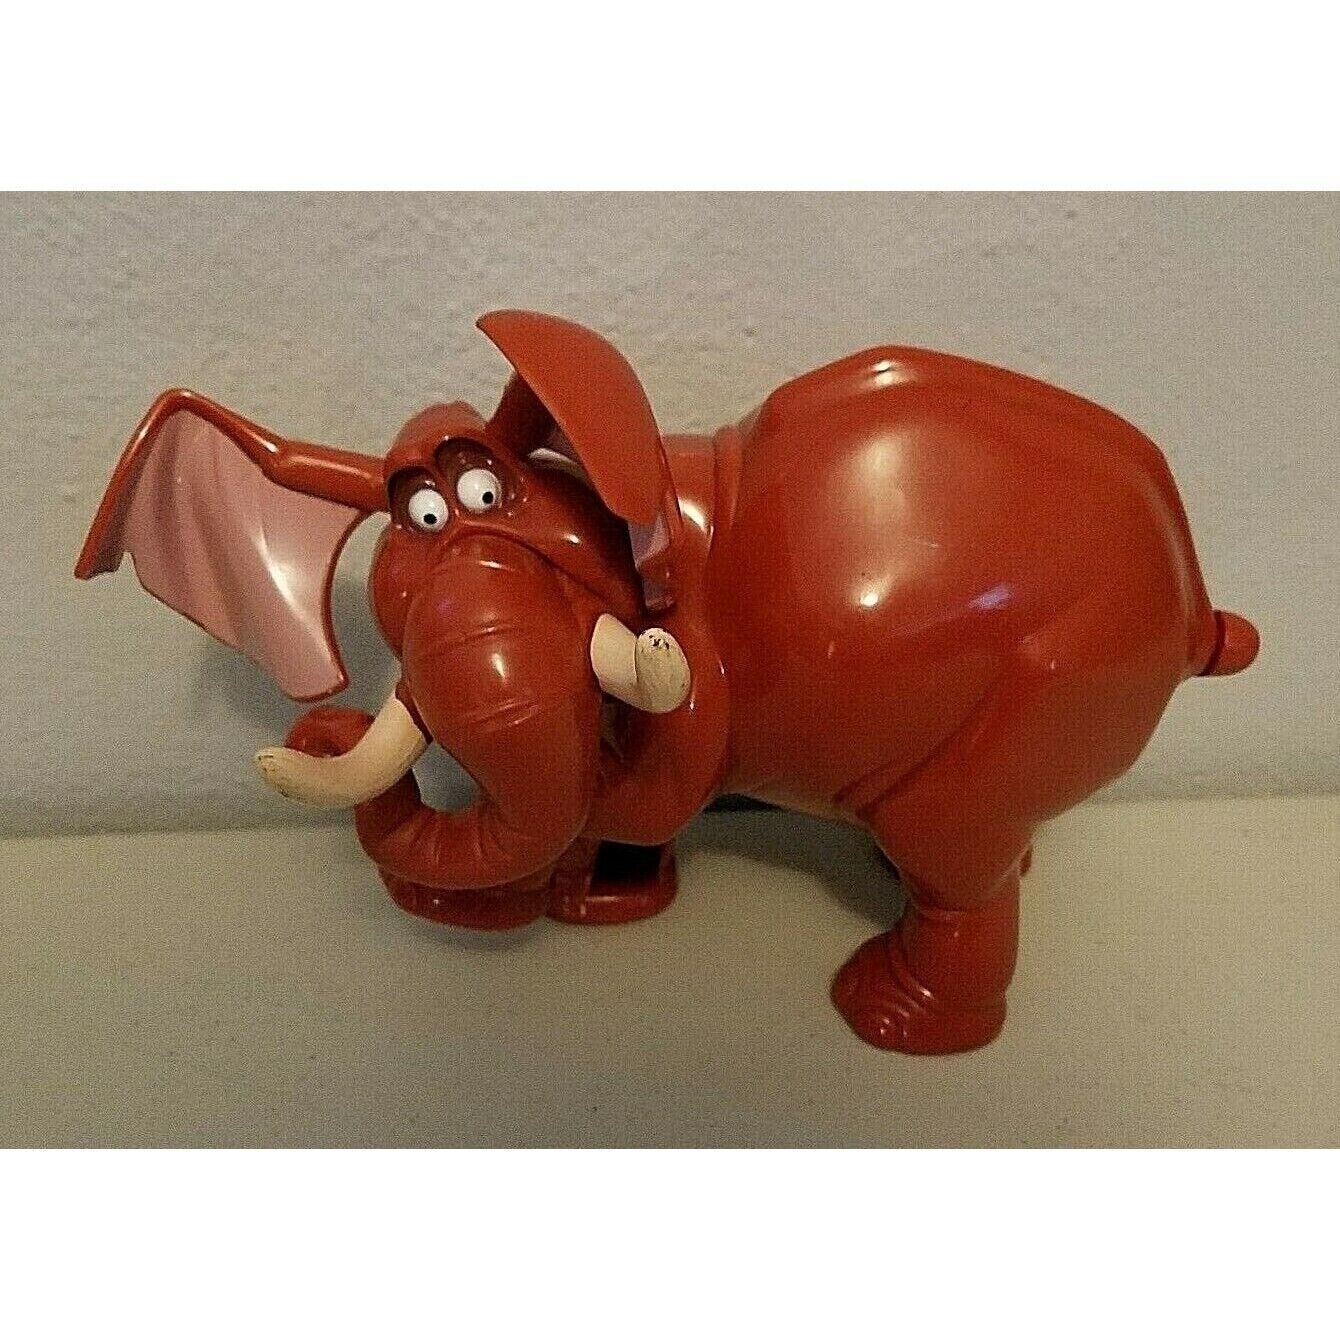 Tarzan Elephant Toy Tantor Wind Up Vintage Walt Disney Works - $6.97